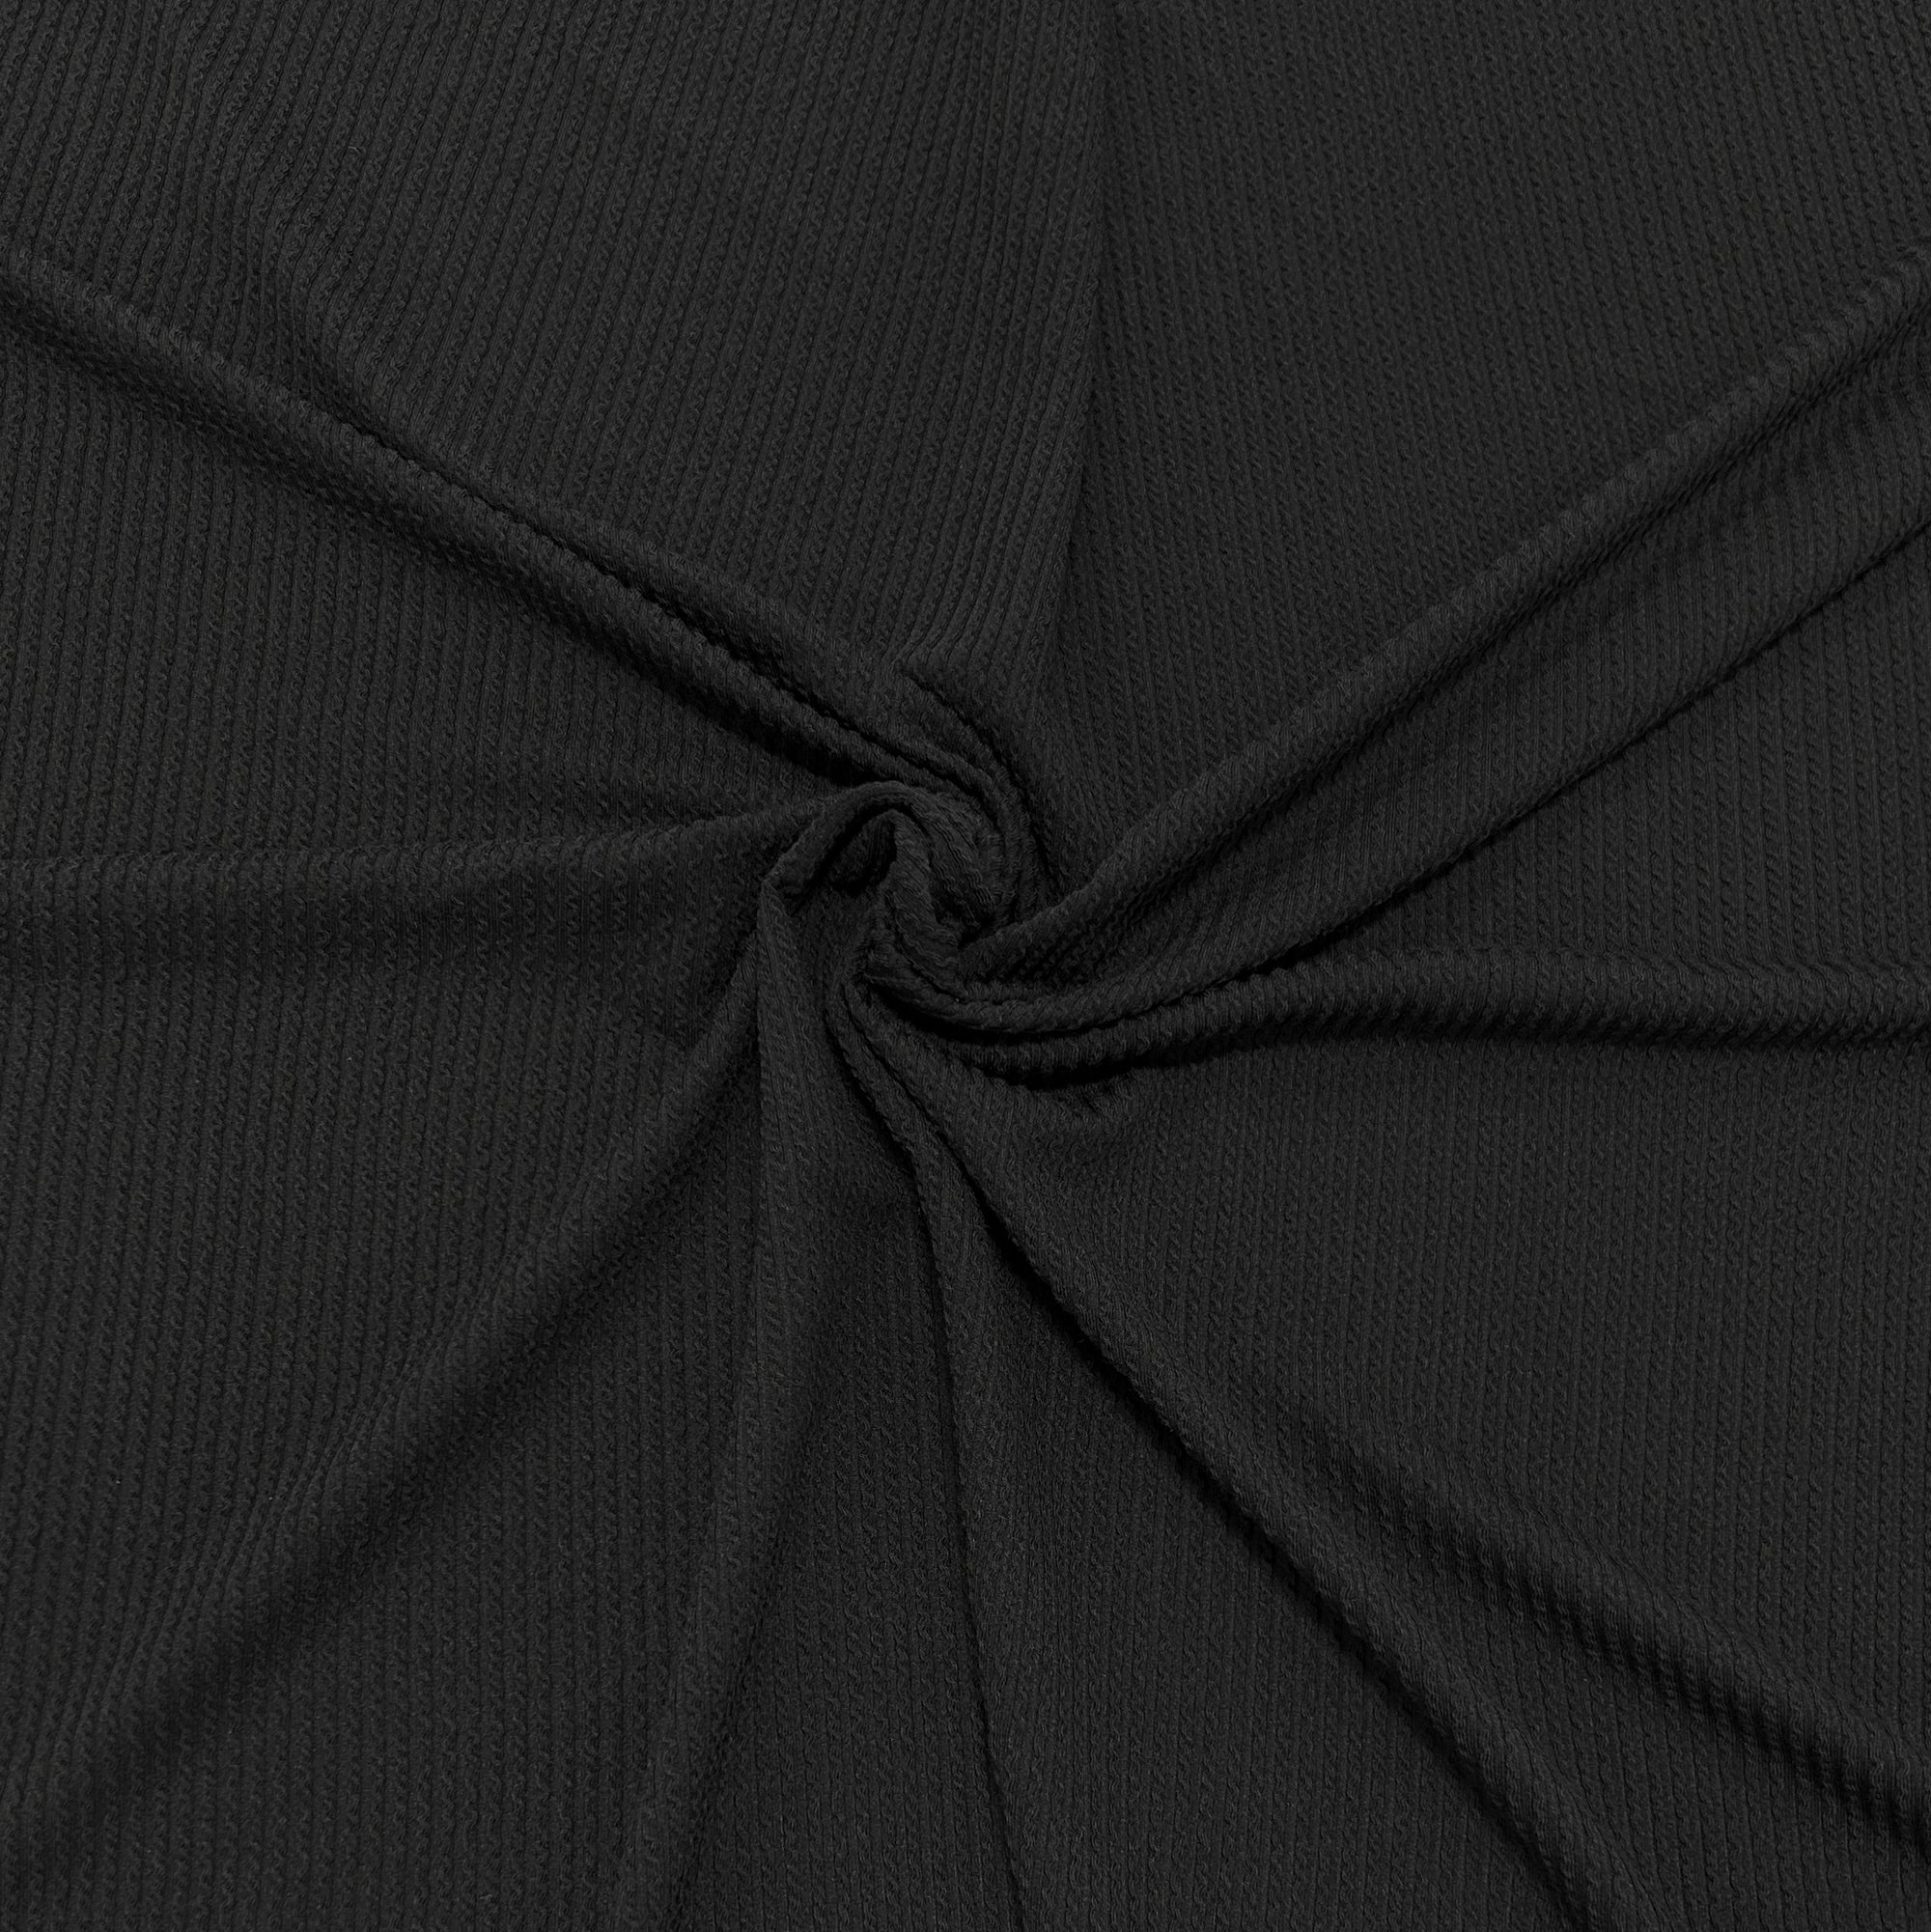 Black Jacquard Double Knit Rib Fabric